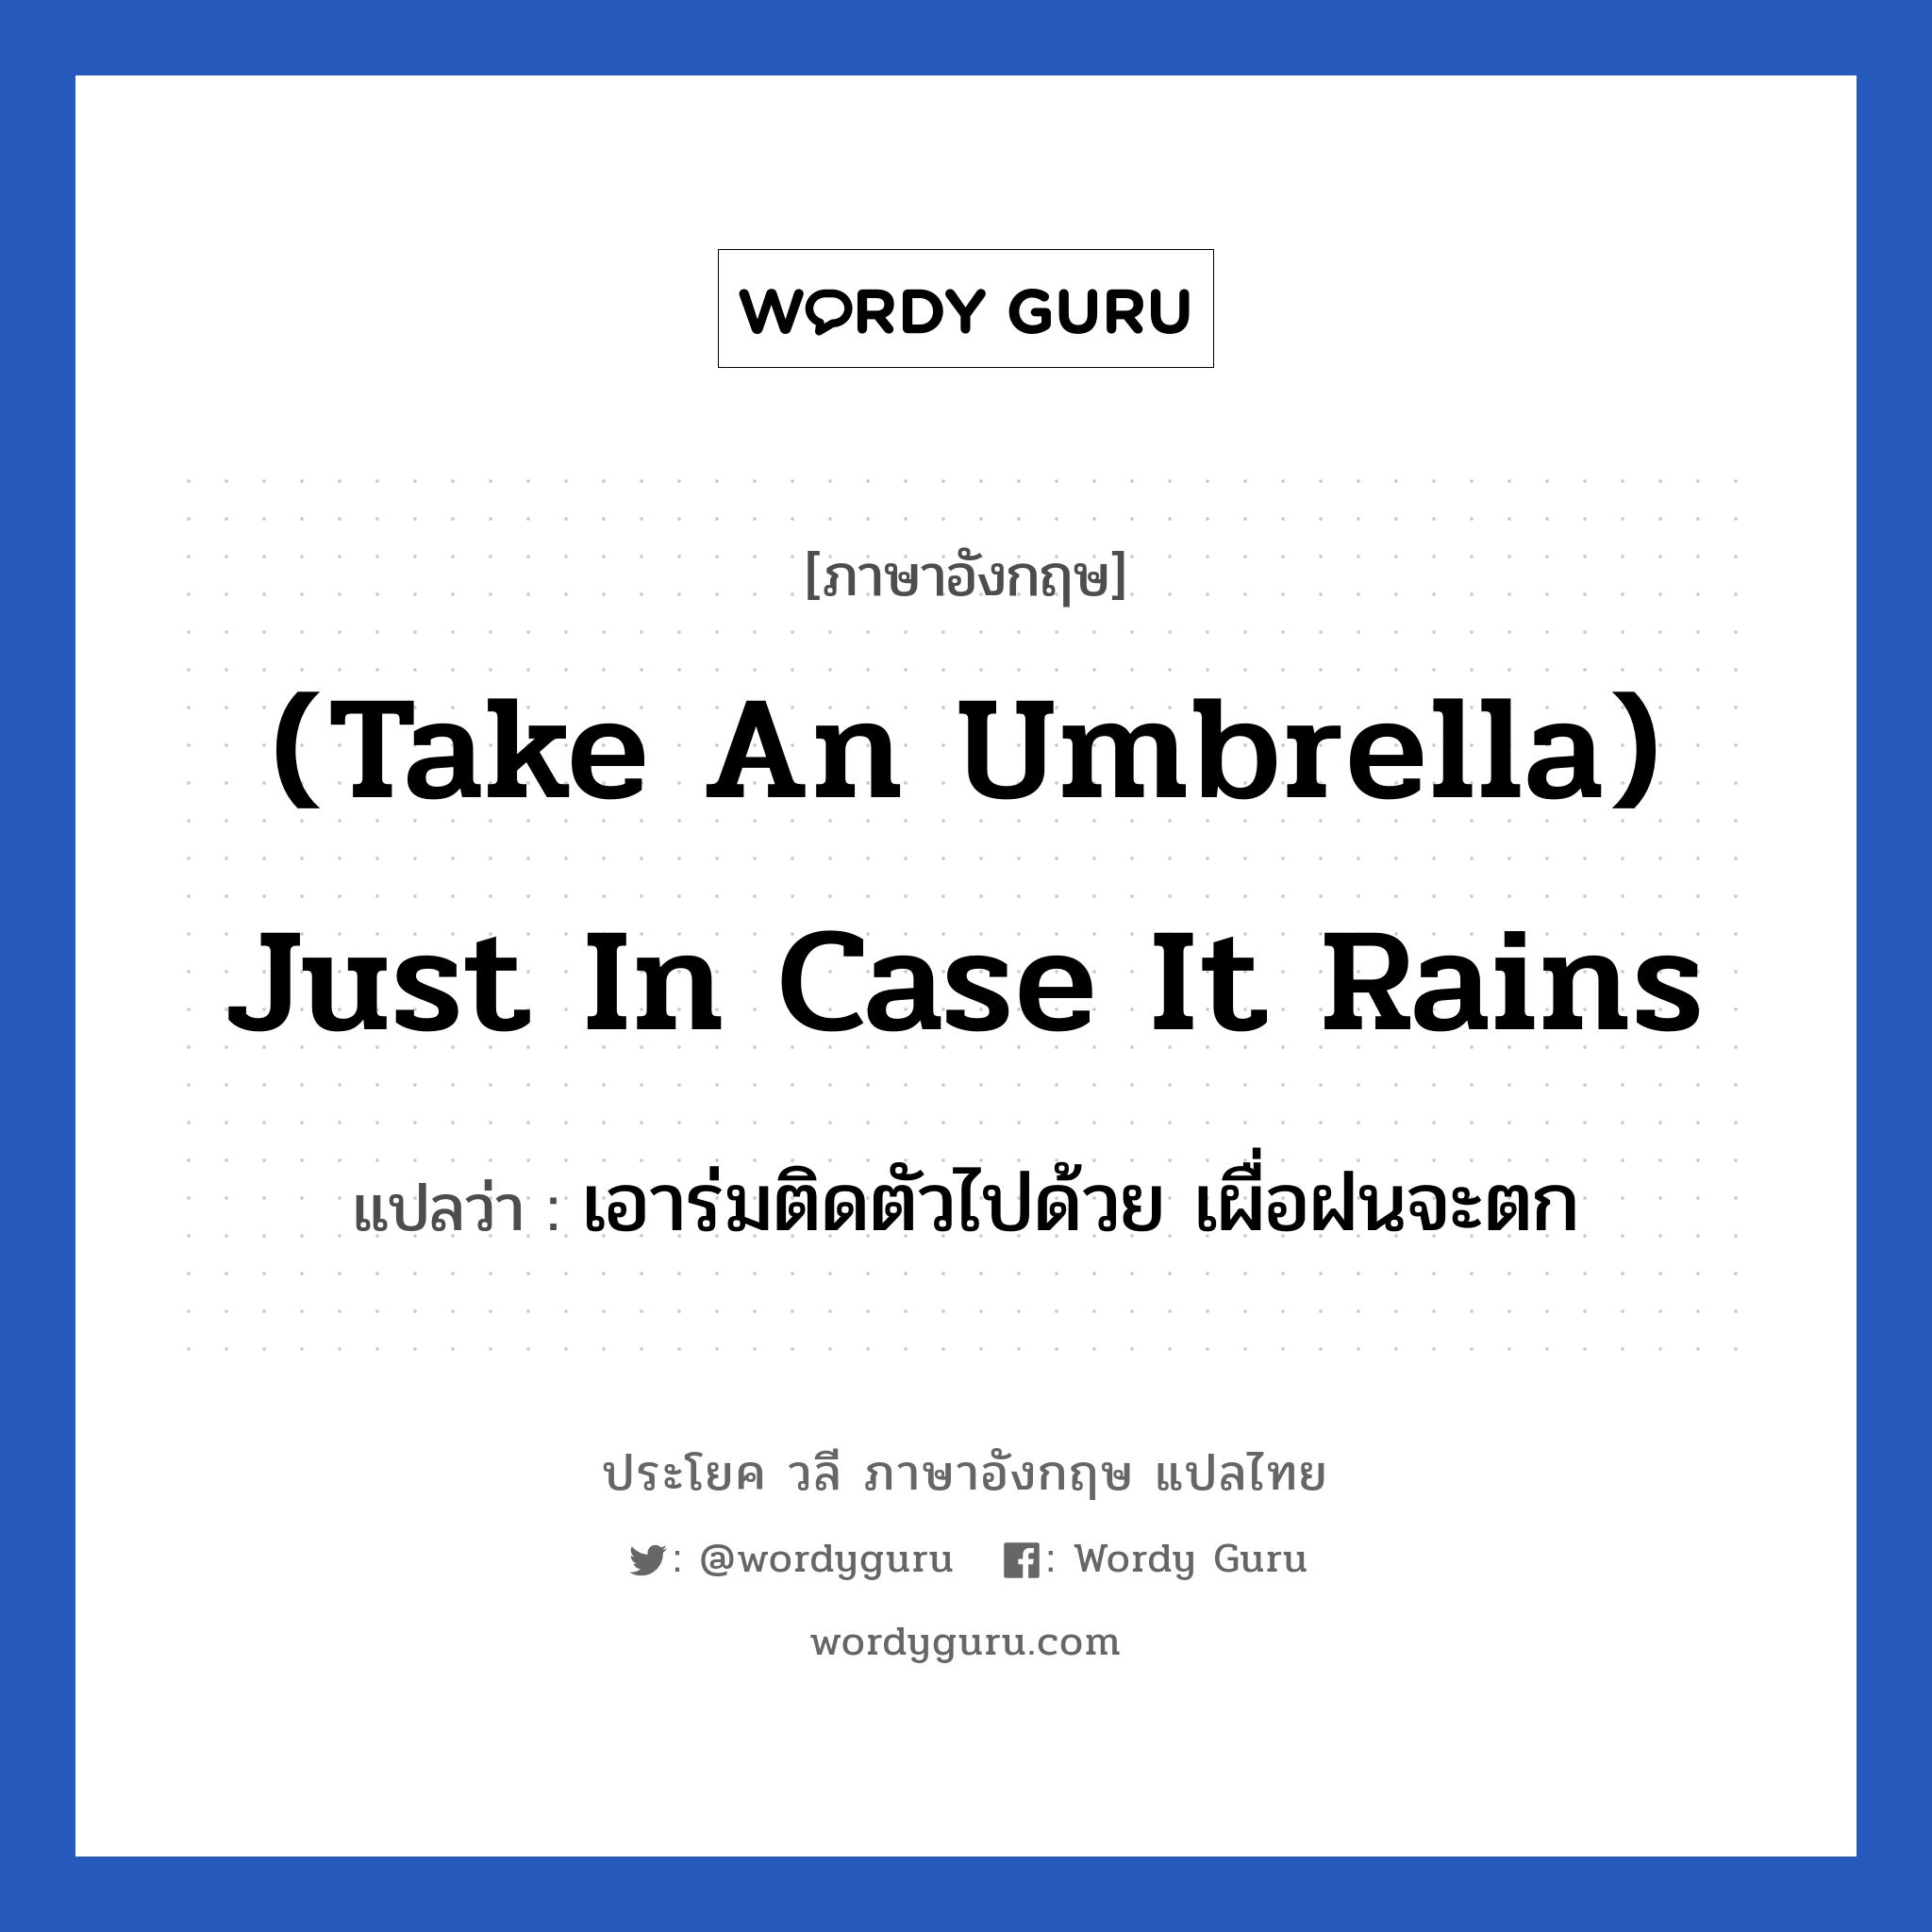 (Take an umbrella) Just in case it rains แปลว่า?, วลีภาษาอังกฤษ (Take an umbrella) Just in case it rains แปลว่า เอาร่มติดตัวไปด้วย เผื่อฝนจะตก